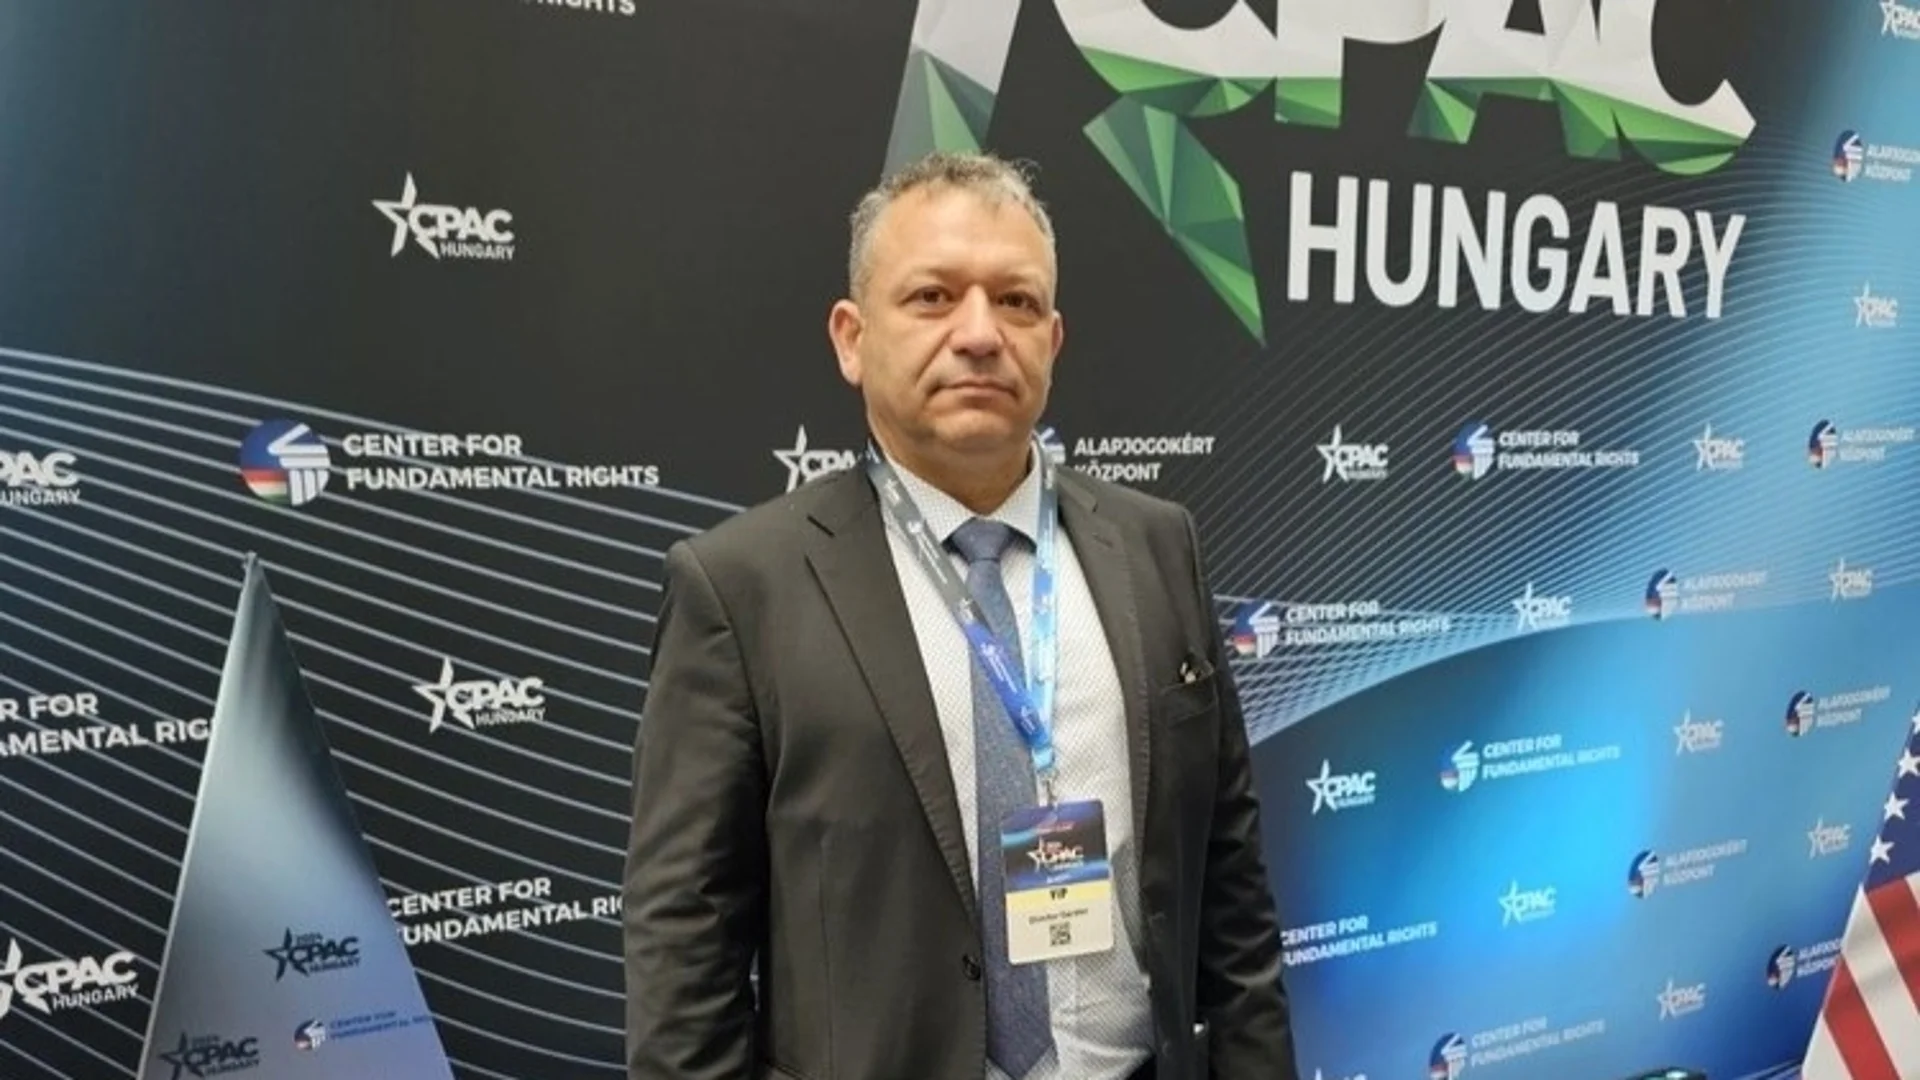 Димитър Гърдев е единственият депутат от България на най-големия форум на консерваторите в света